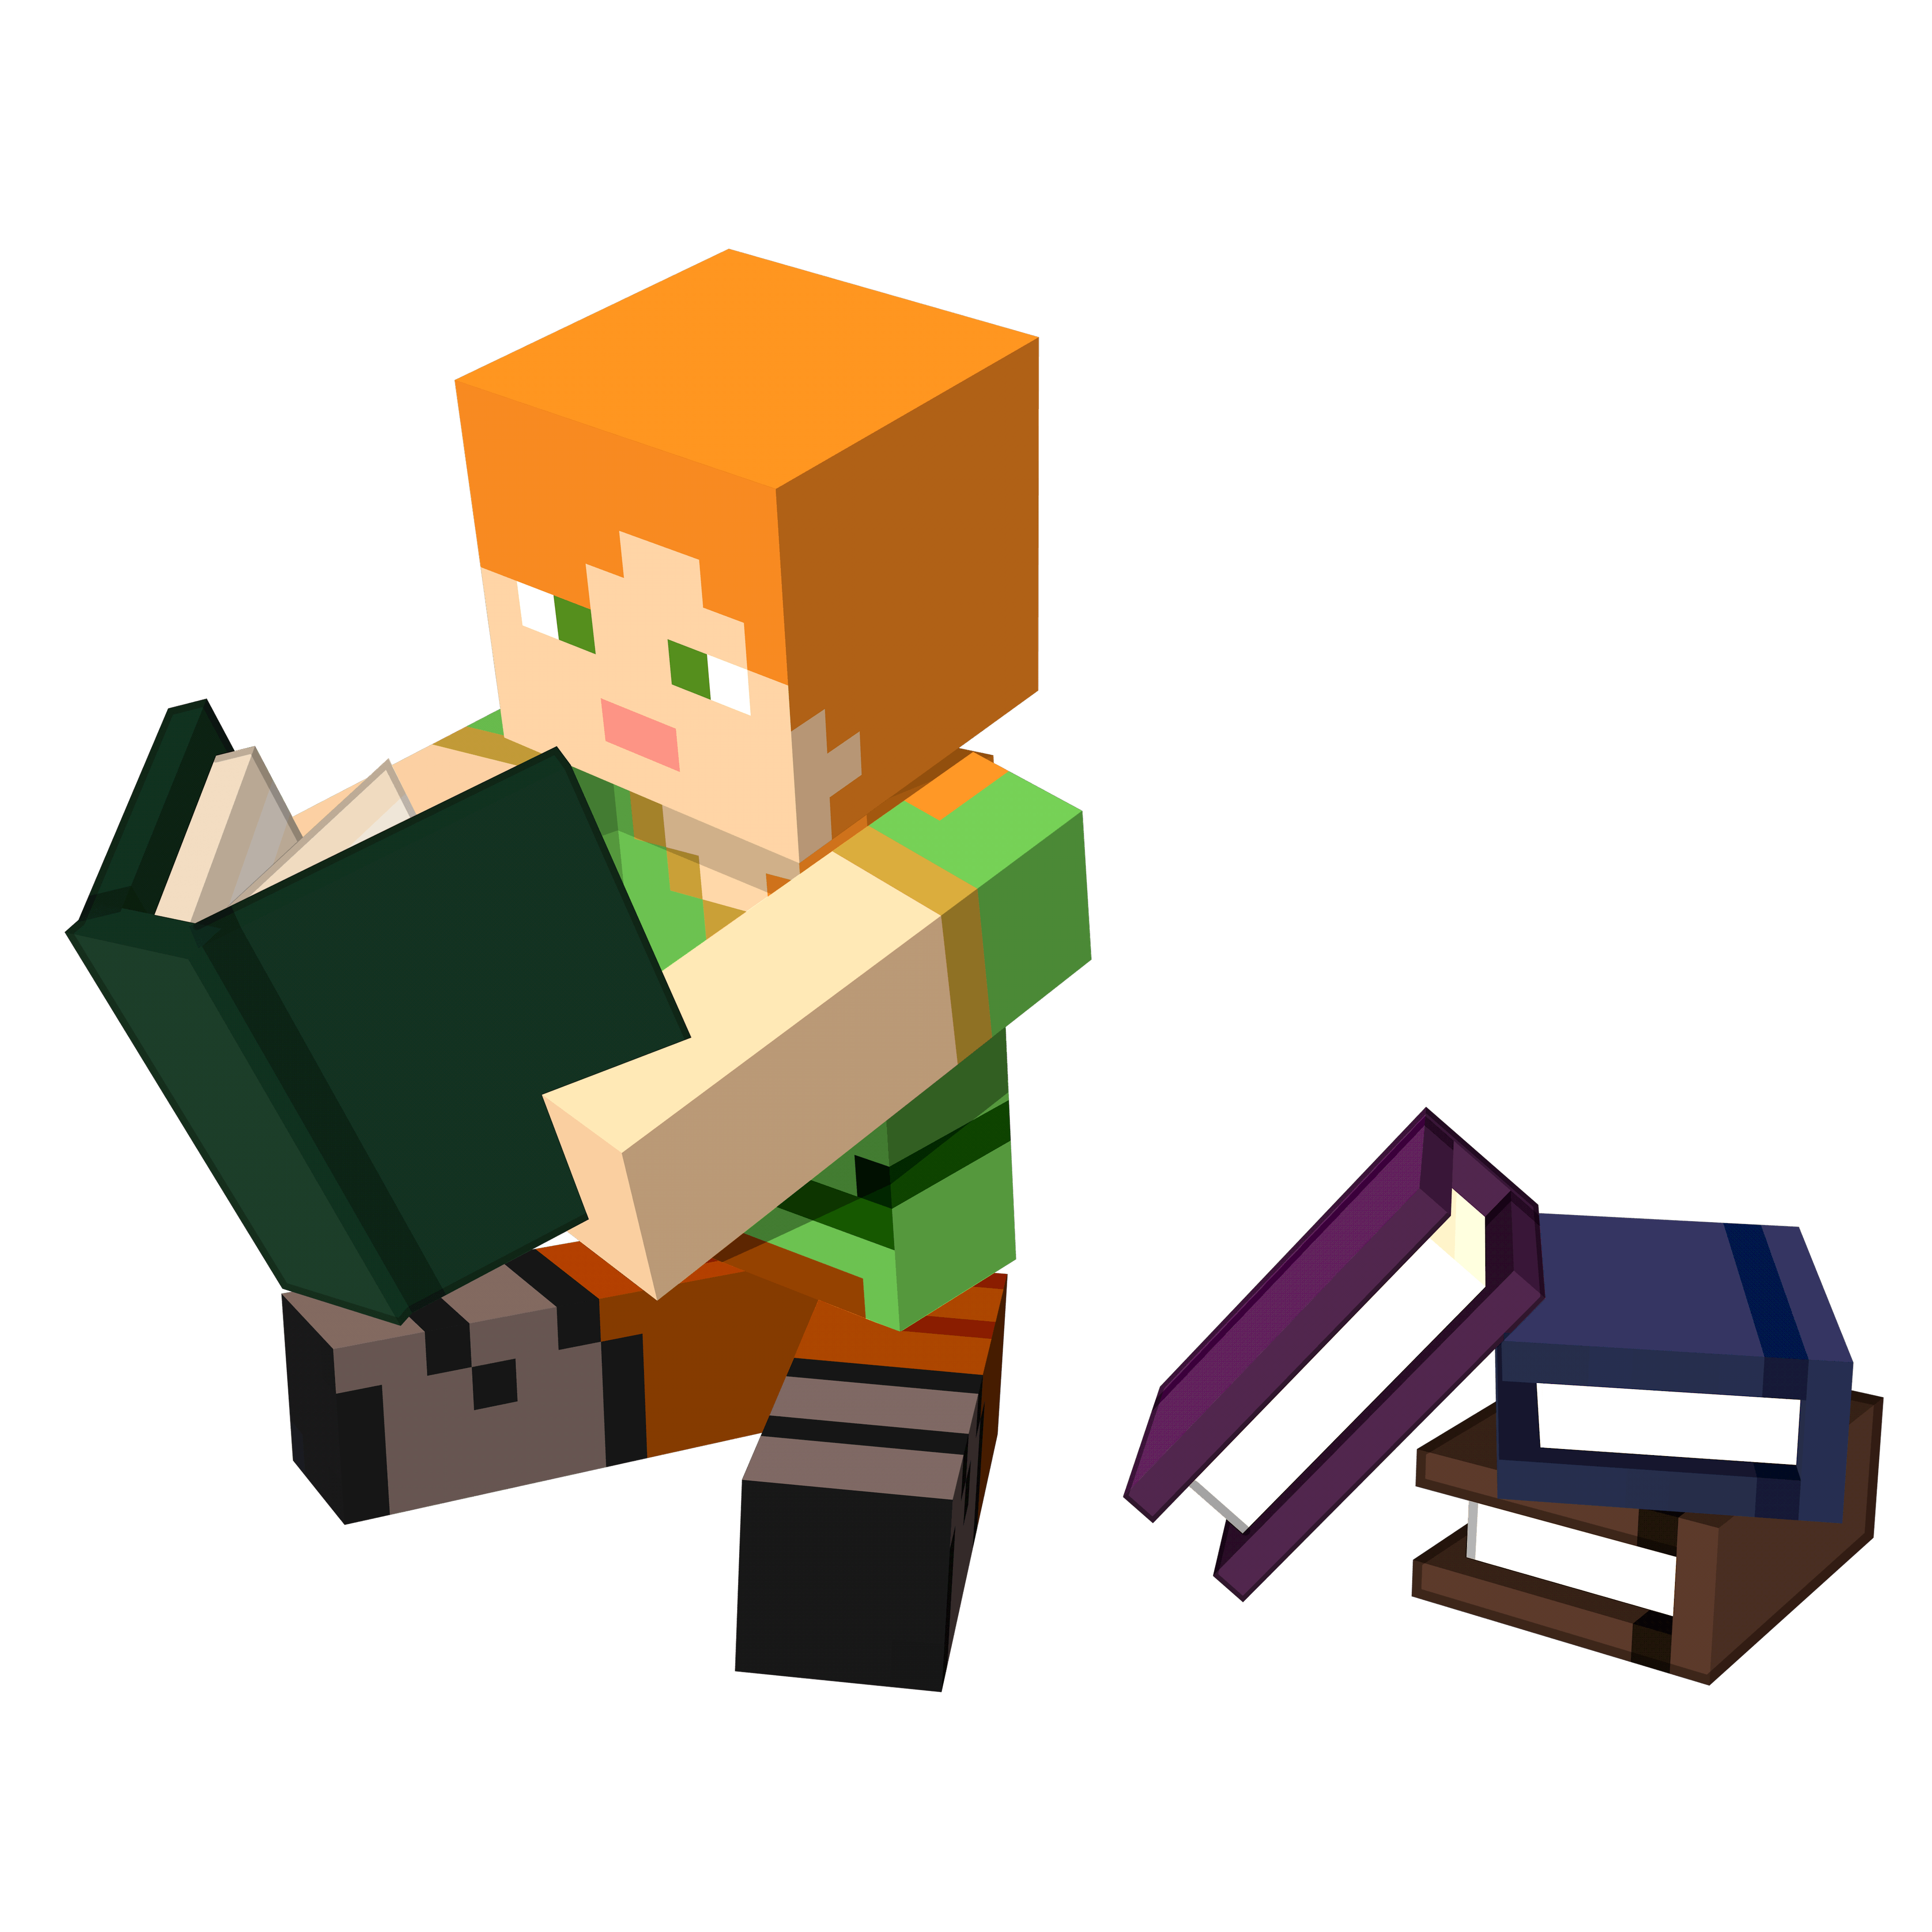 Иллюстрация персонажа Minecraft со стандартной текстурой Алекс, сидящей и читающей зеленую книгу, а рядом с ней стопка еще трех книг